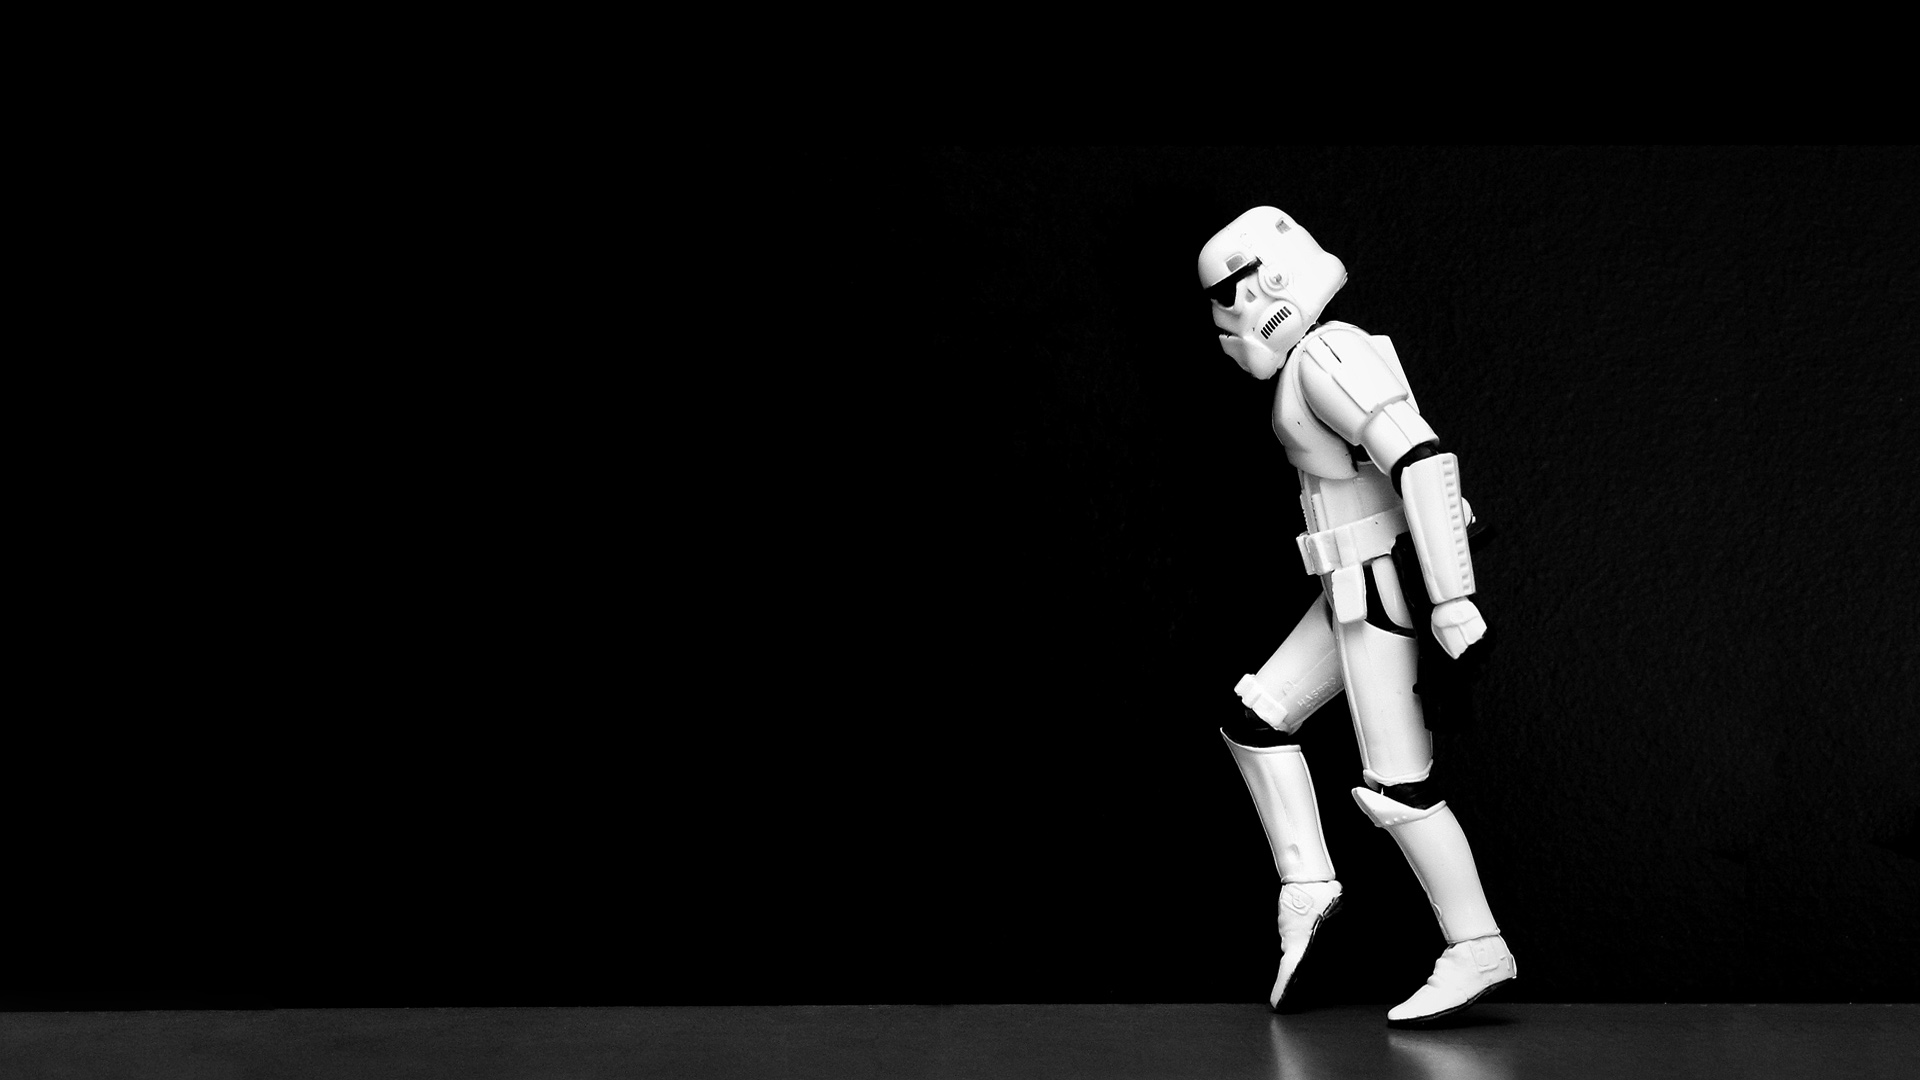 Star Wars Wallpaper Stormtroopers Moonwalk